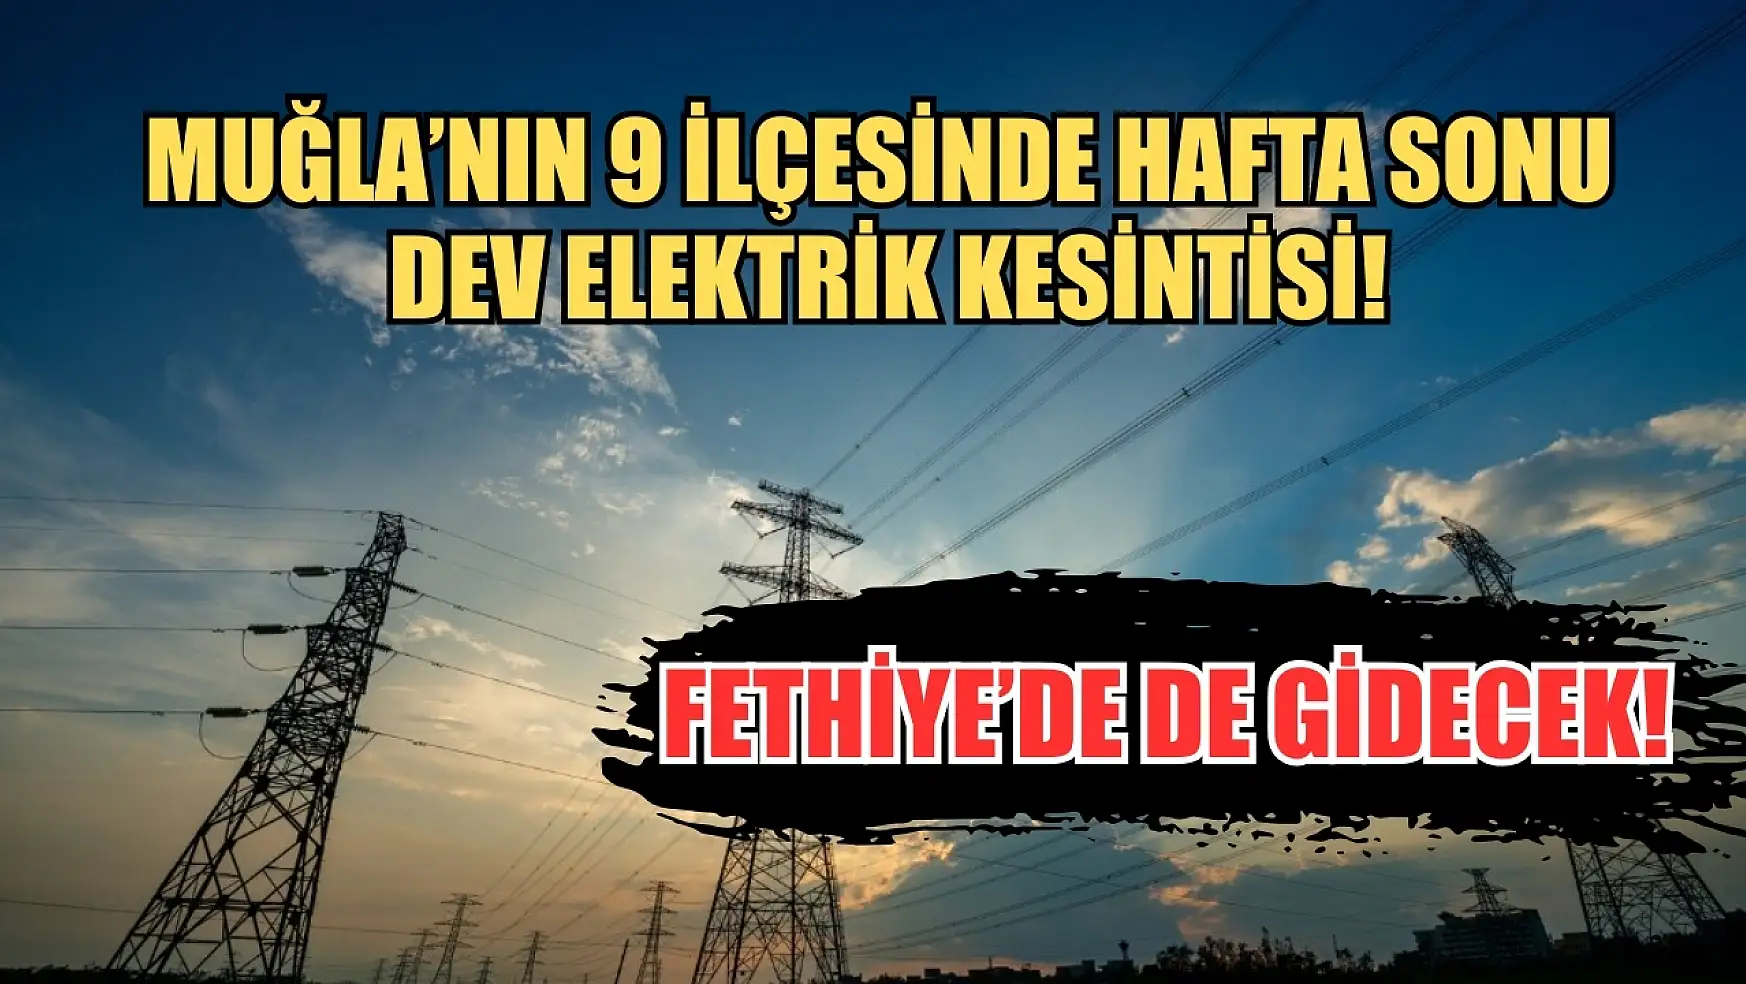 Muğla'nın 9 ilçesinde hafta sonu dev elektrik kesintisi! Fethiye'de de gidecek! 27-28 Nisan elektrik kesintisi detaylar..